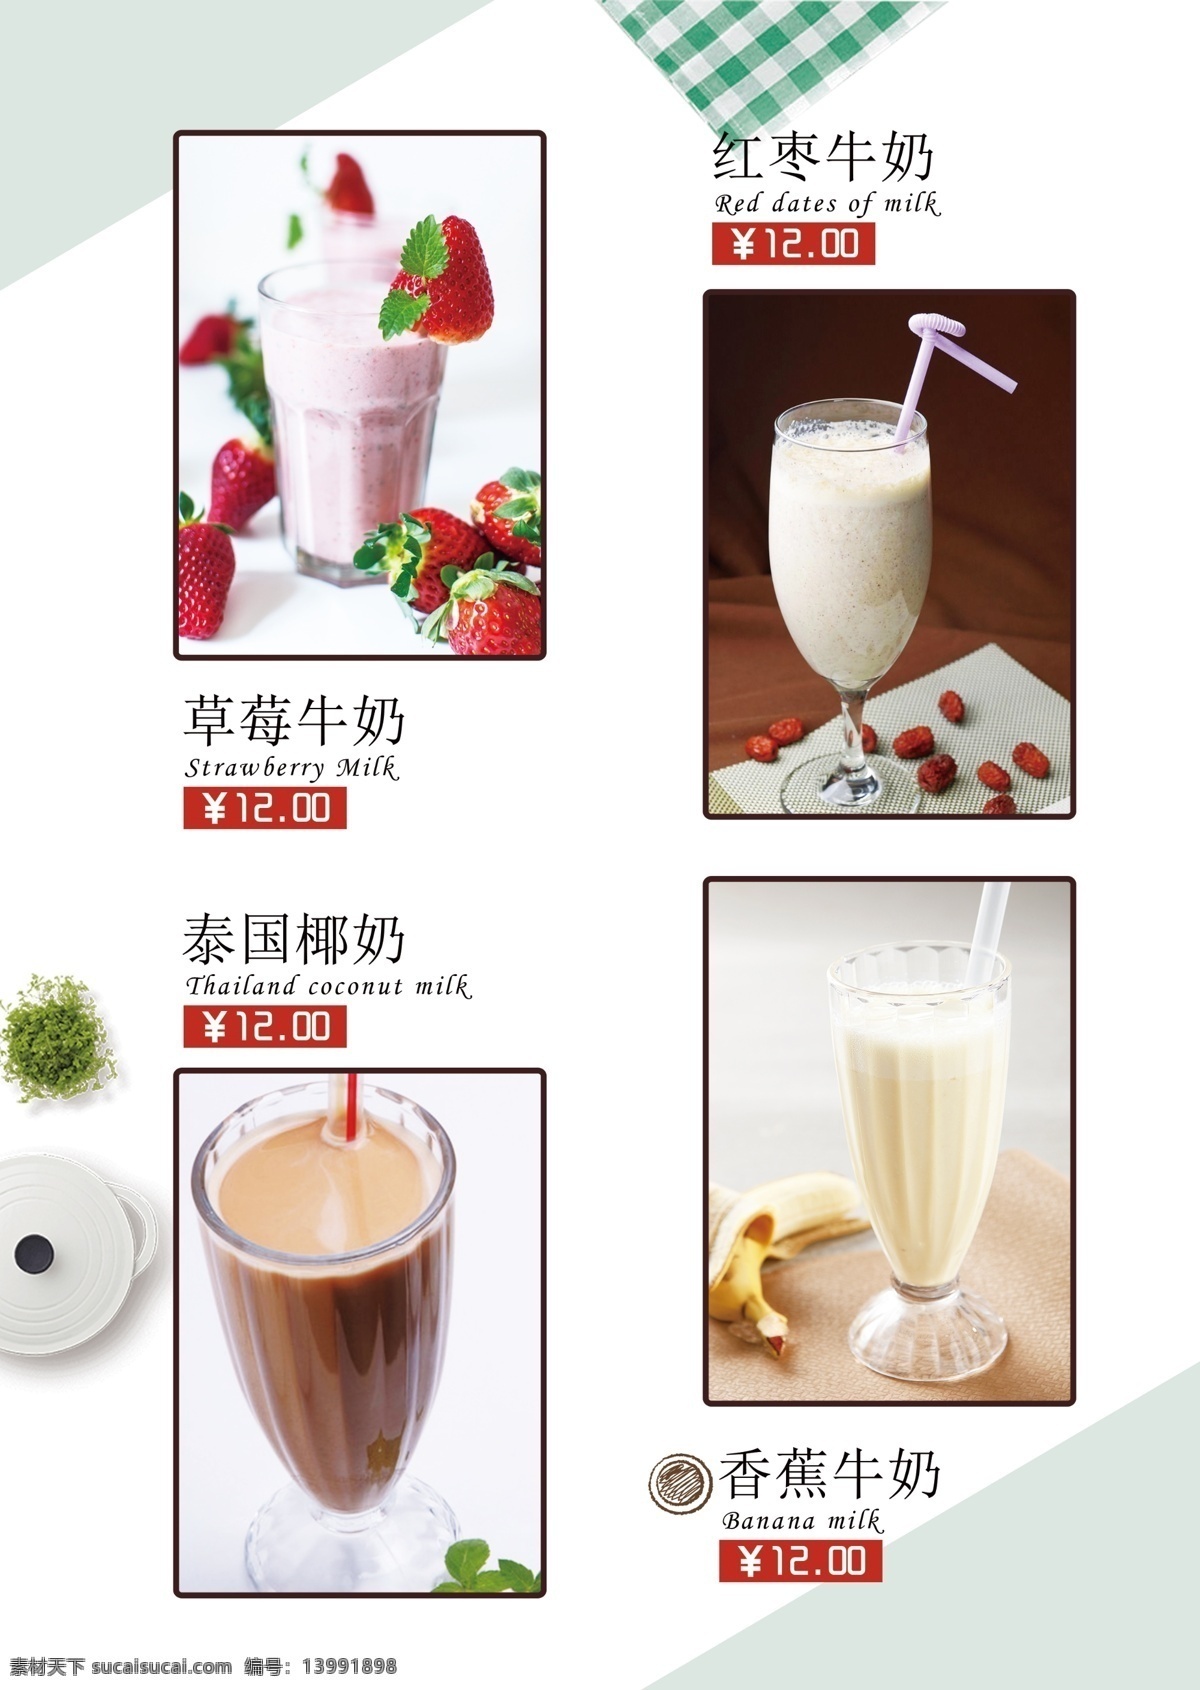 牛奶 饮品 菜单 宣传单 页 宣传单页 草莓牛奶 红枣牛奶 泰国椰奶 香蕉牛奶 ps分层 餐厅文化展板 分层